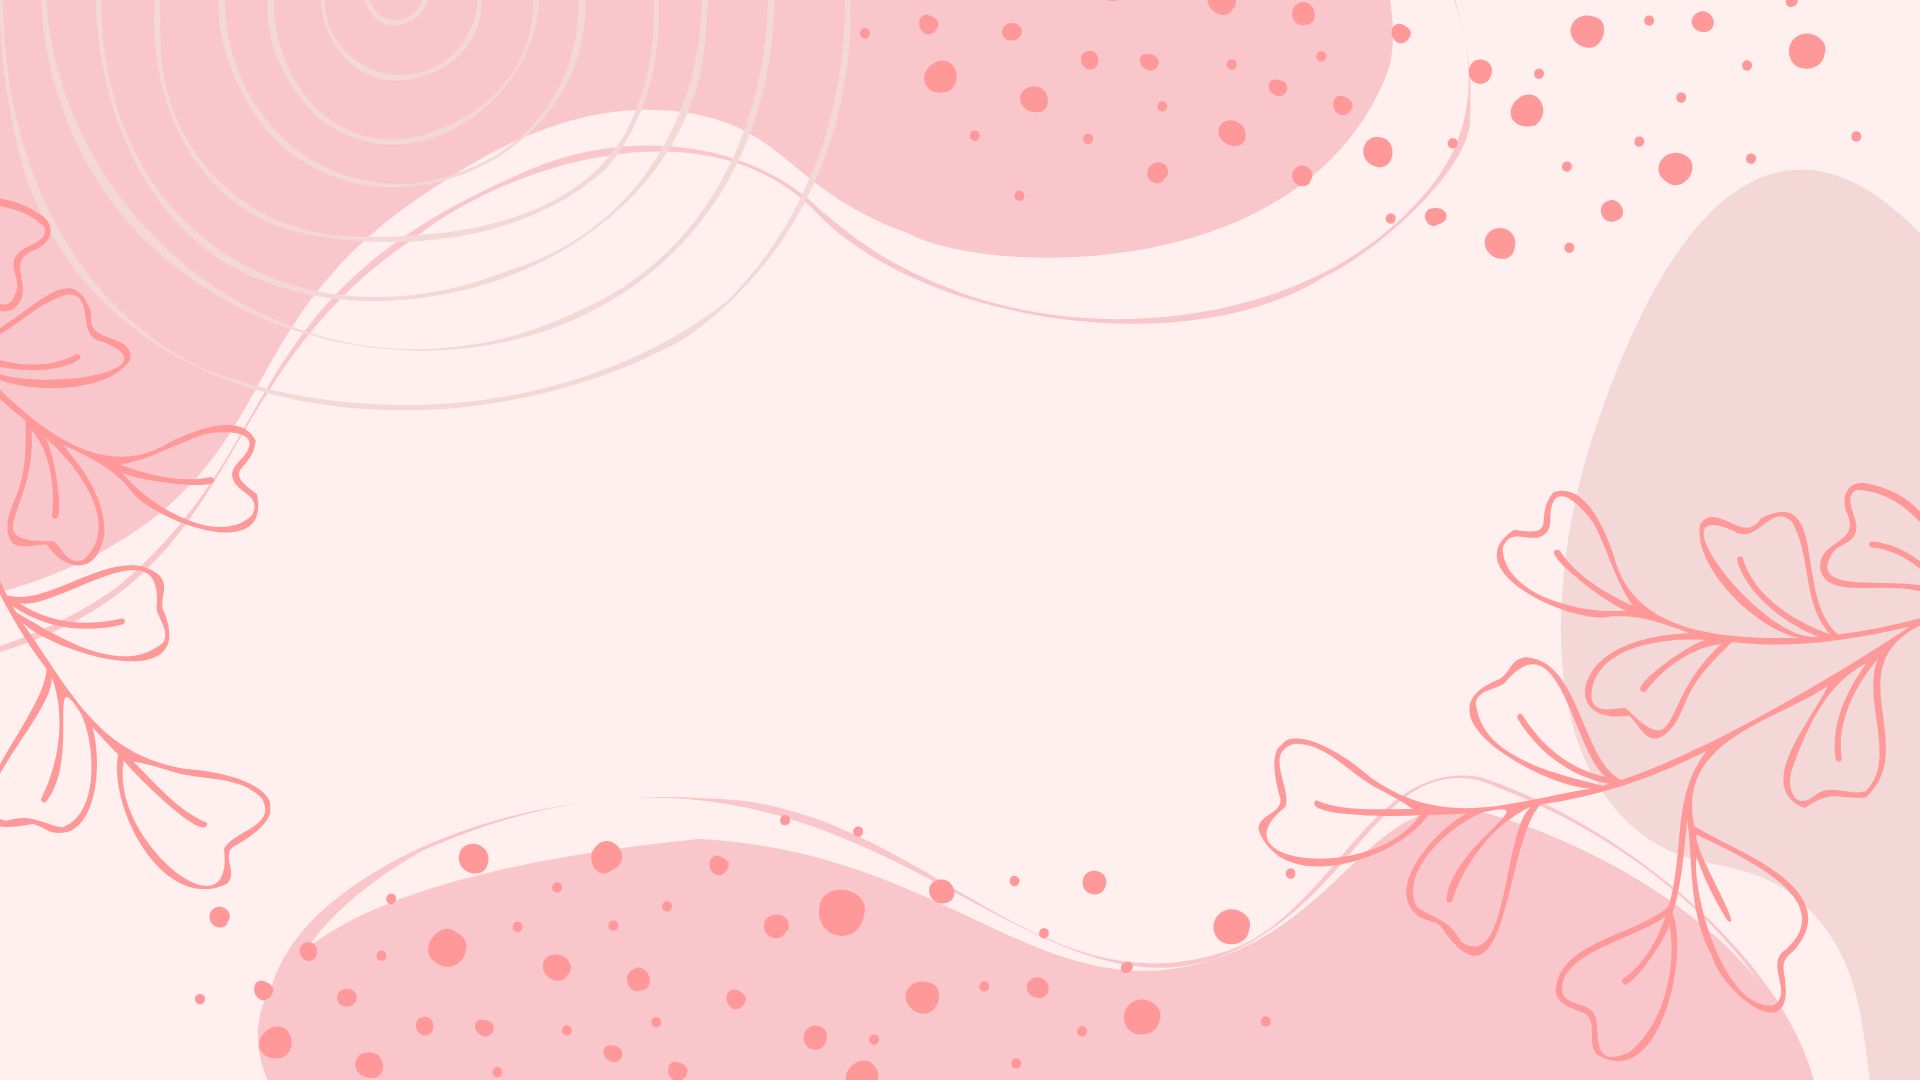 Pale Pink Background in Illustrator, PNG, JPG, EPS, SVG - Download